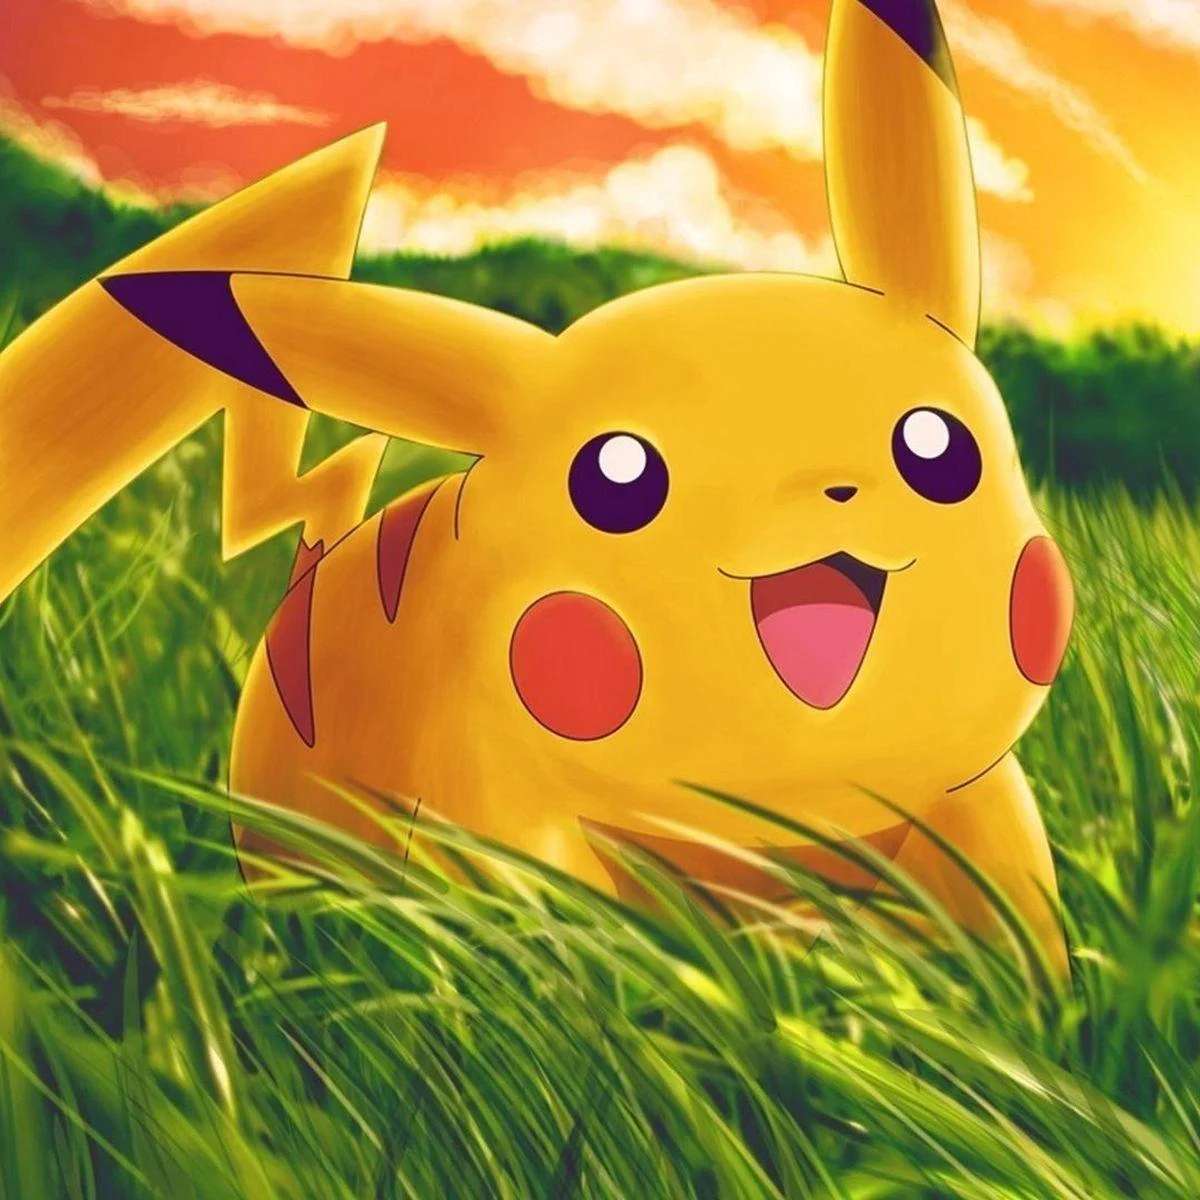 Pikachu (Pokémon) online puzzle